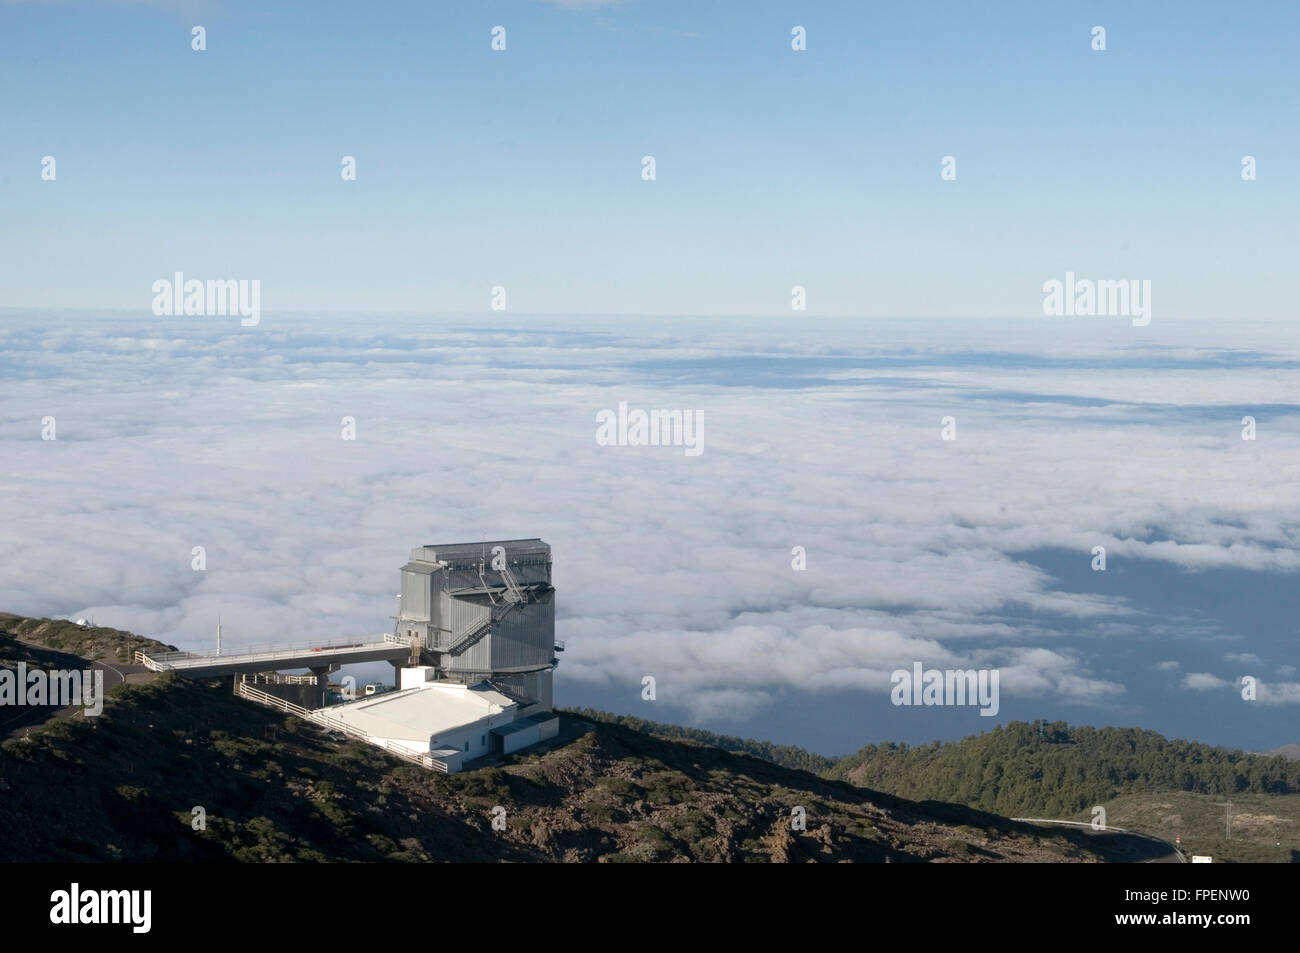 telescopio nazionale galileo la palma canary isles islands LNG telescope Stock Photo